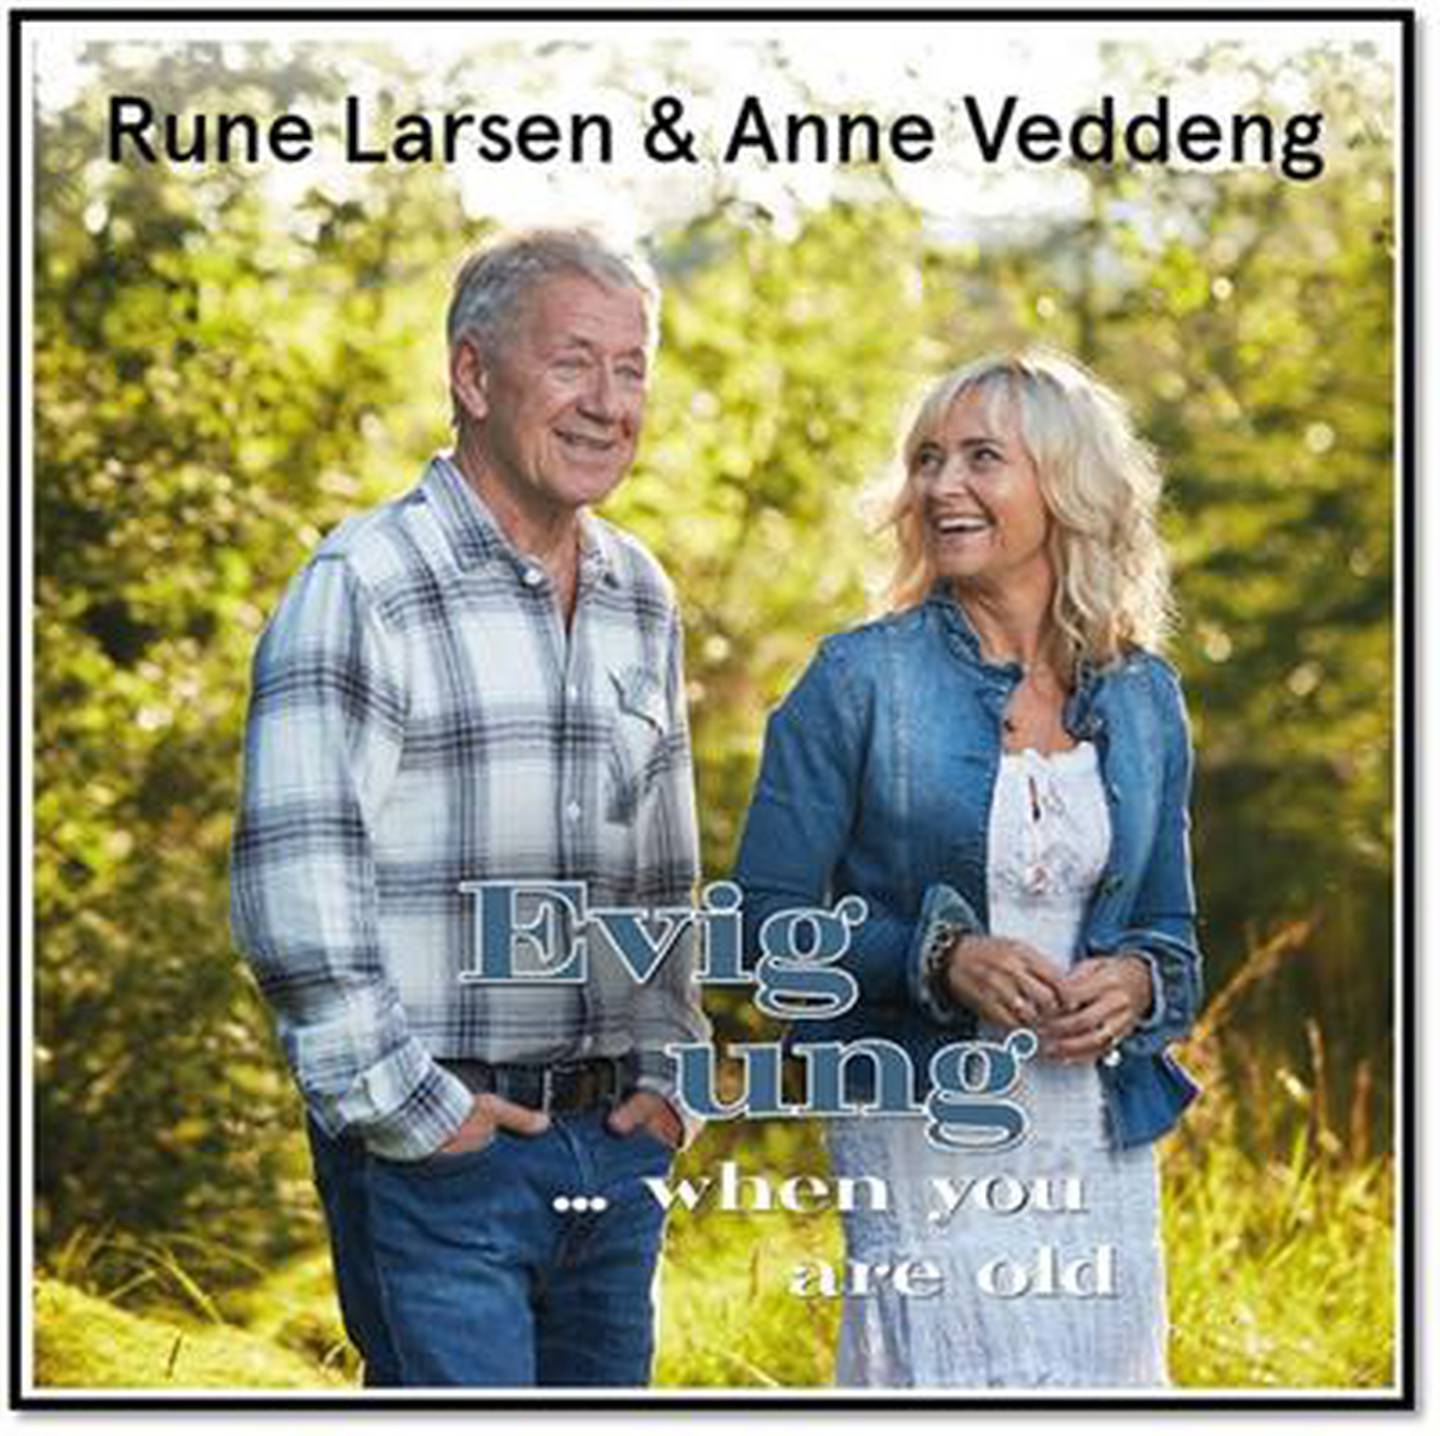 Rune Larsen & Anne Veddeng